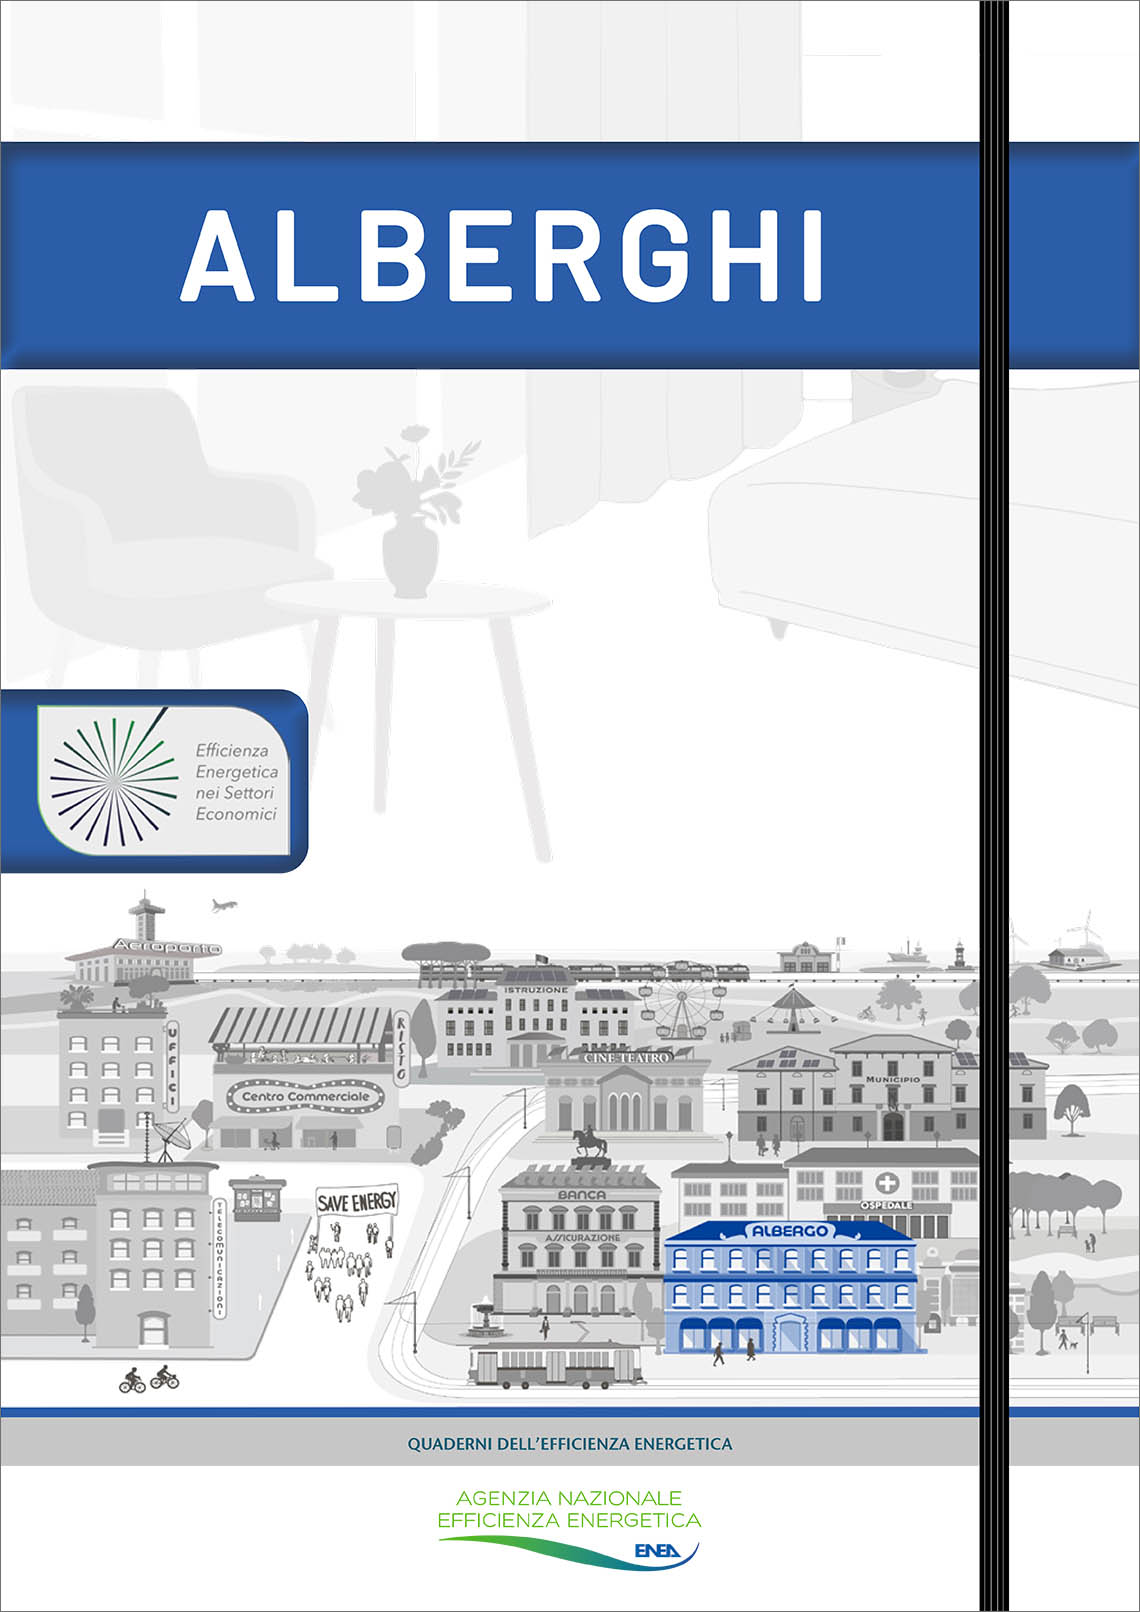 La copertina del quaderno dell'efficienza energetica dedicato agli alberghi con la scritta 